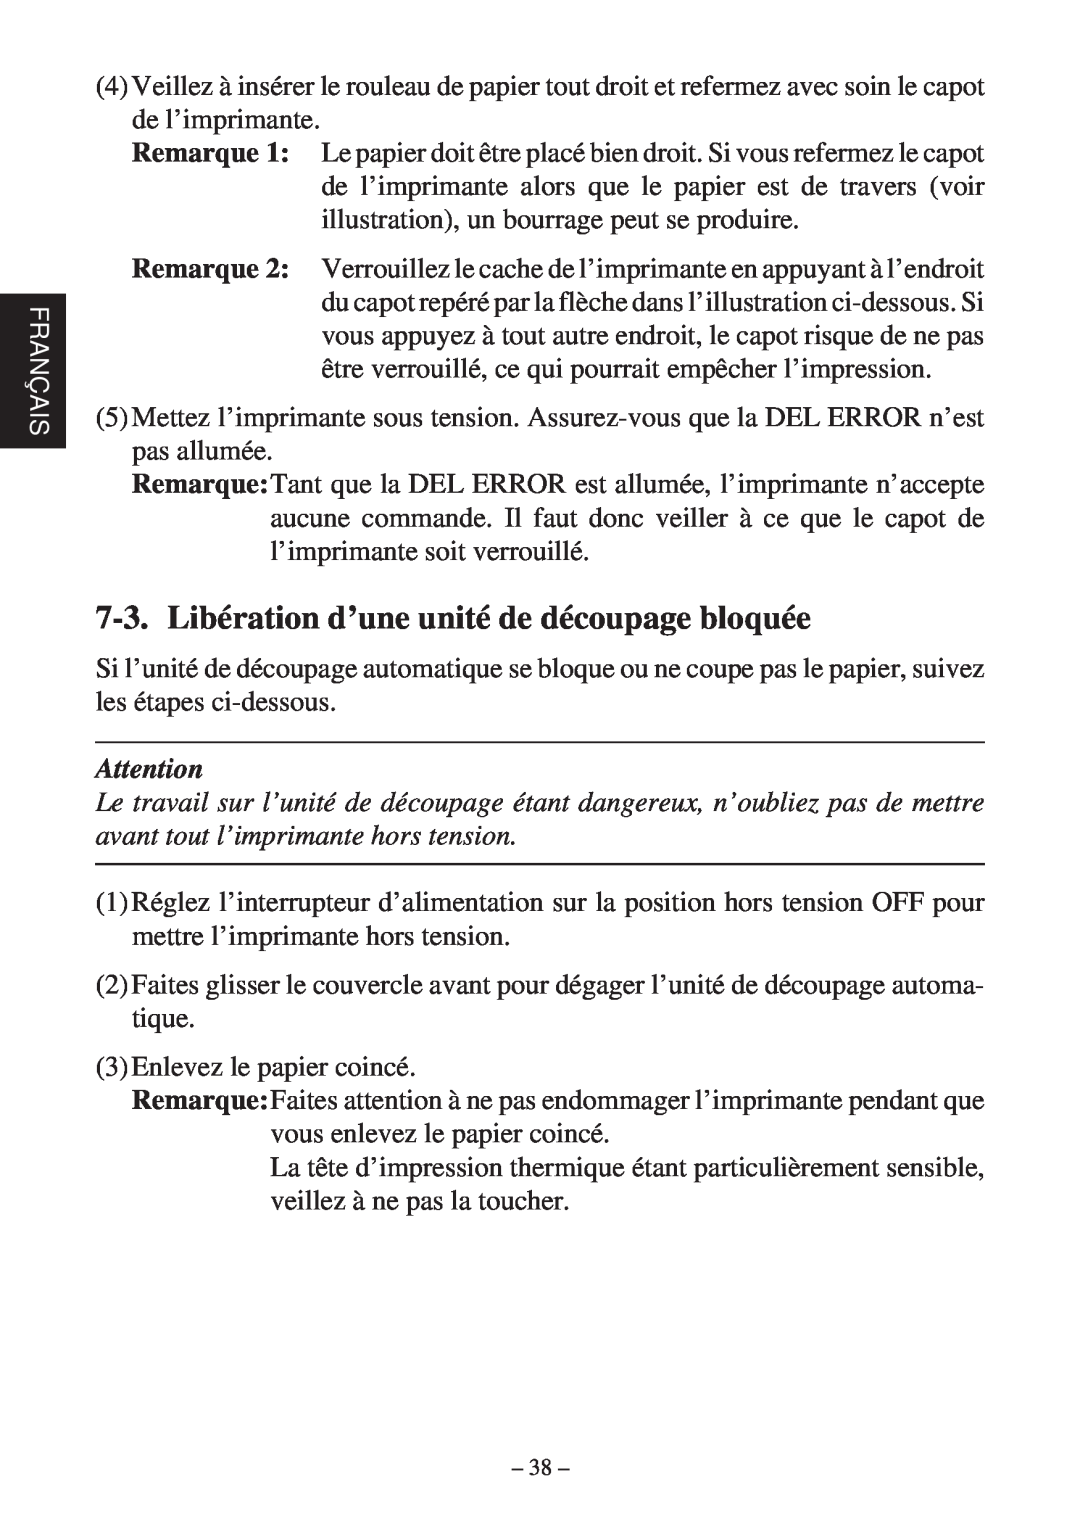 Star Micronics TSP2000 user manual Libération d’une unité de découpage bloquée 